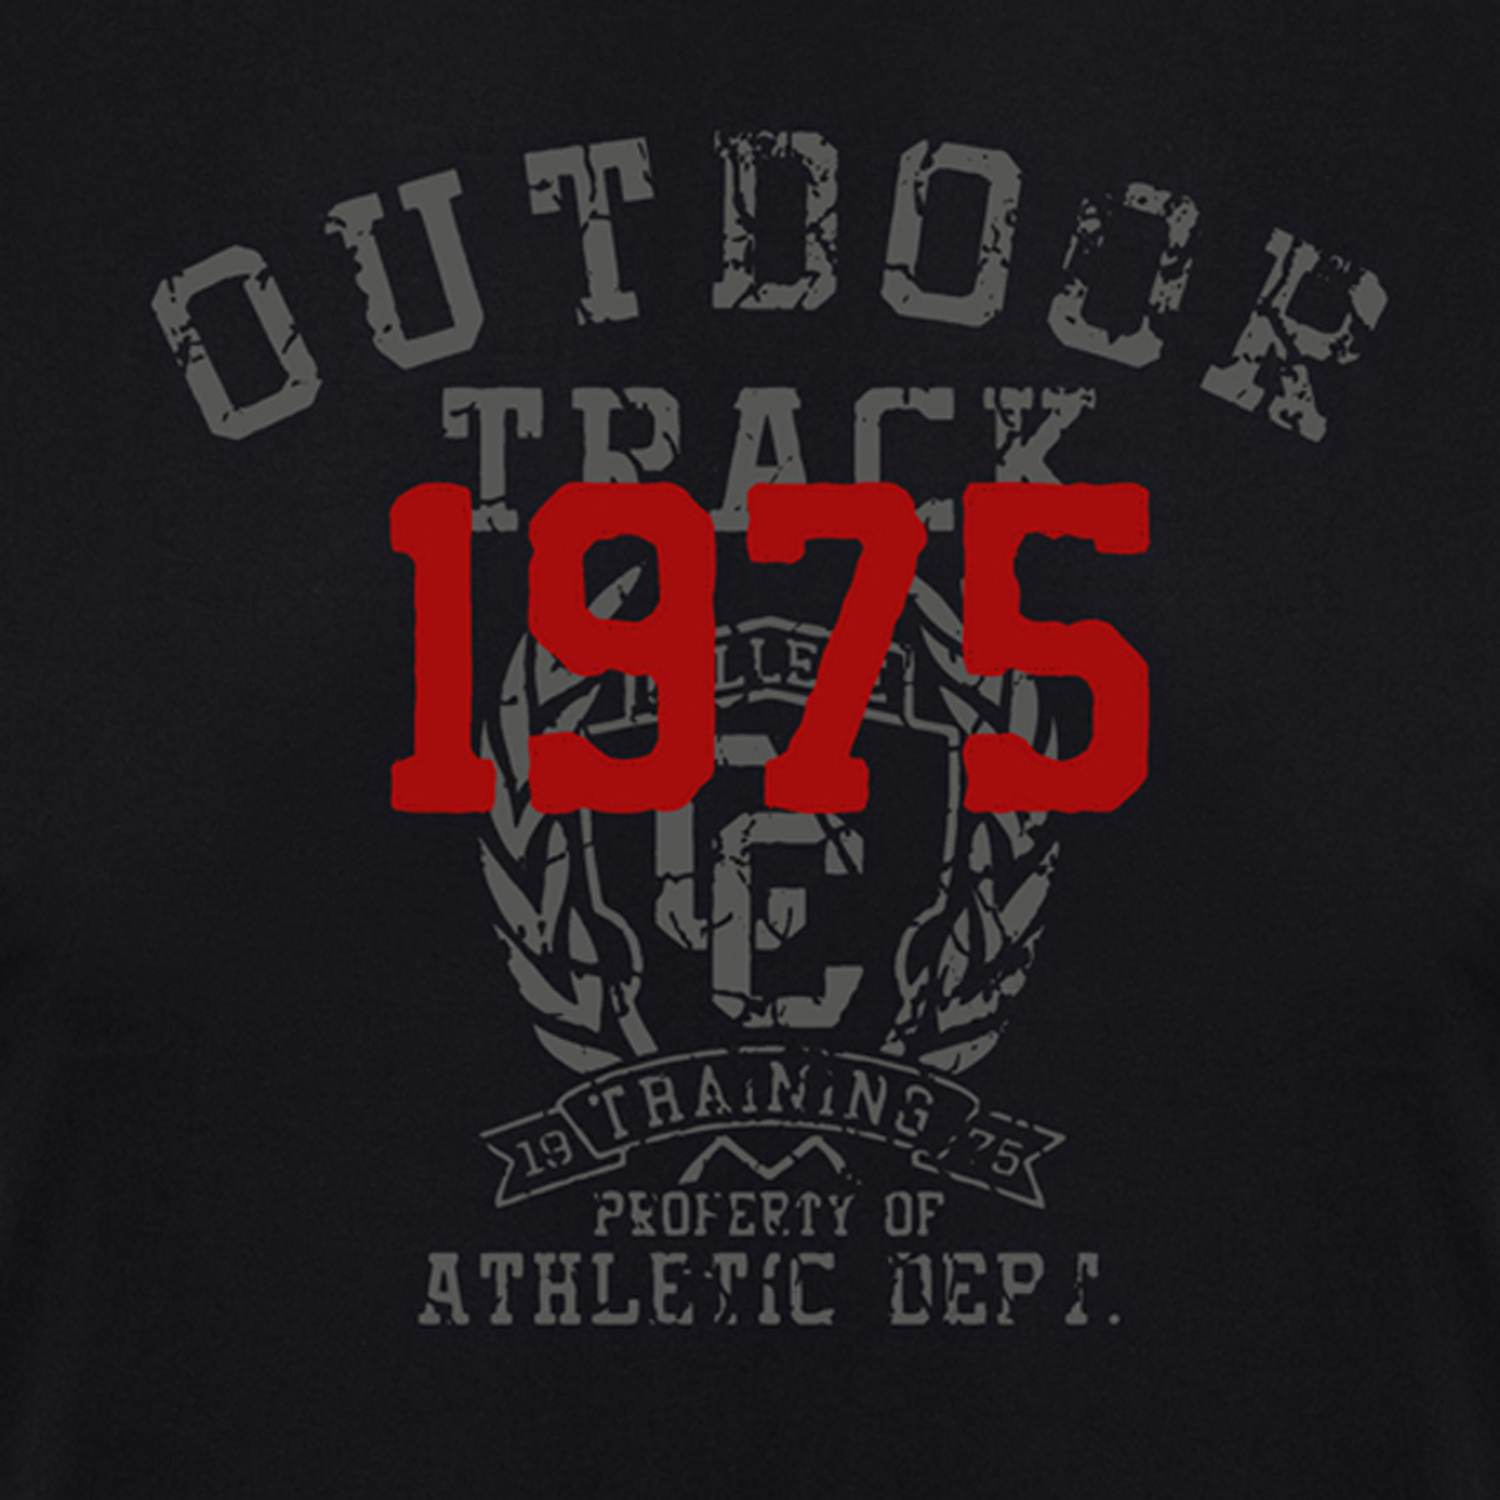 T-shirt noir avec empreinte by ADAMO en grandes tailles jusqu'au 12XL - Série "Outdoor Track"